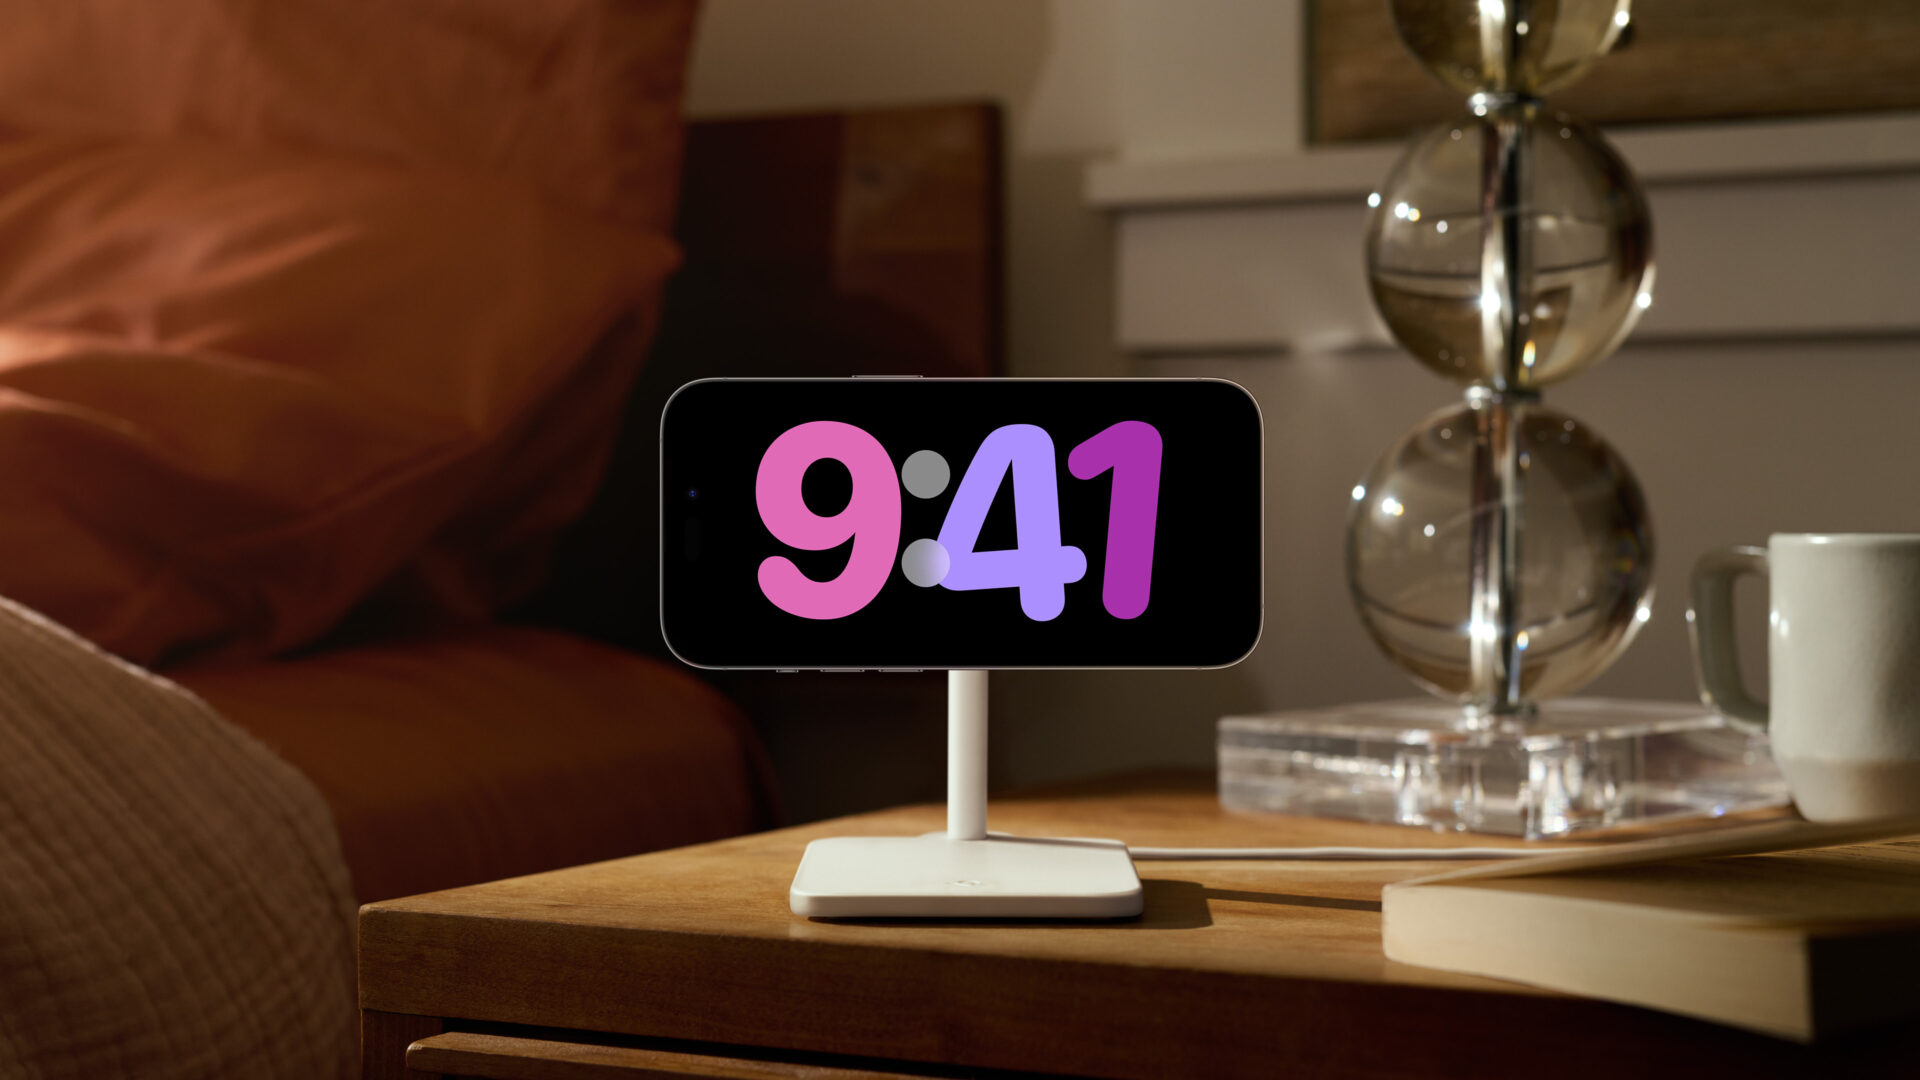 アイオーエス17のスタンバイのイメージ写真。 iPhoneを横向きに置いて充電している時にユーザーが情報をひとめで確認できるように表示するための新しい方法です。画面いっぱいに時間が表示されています